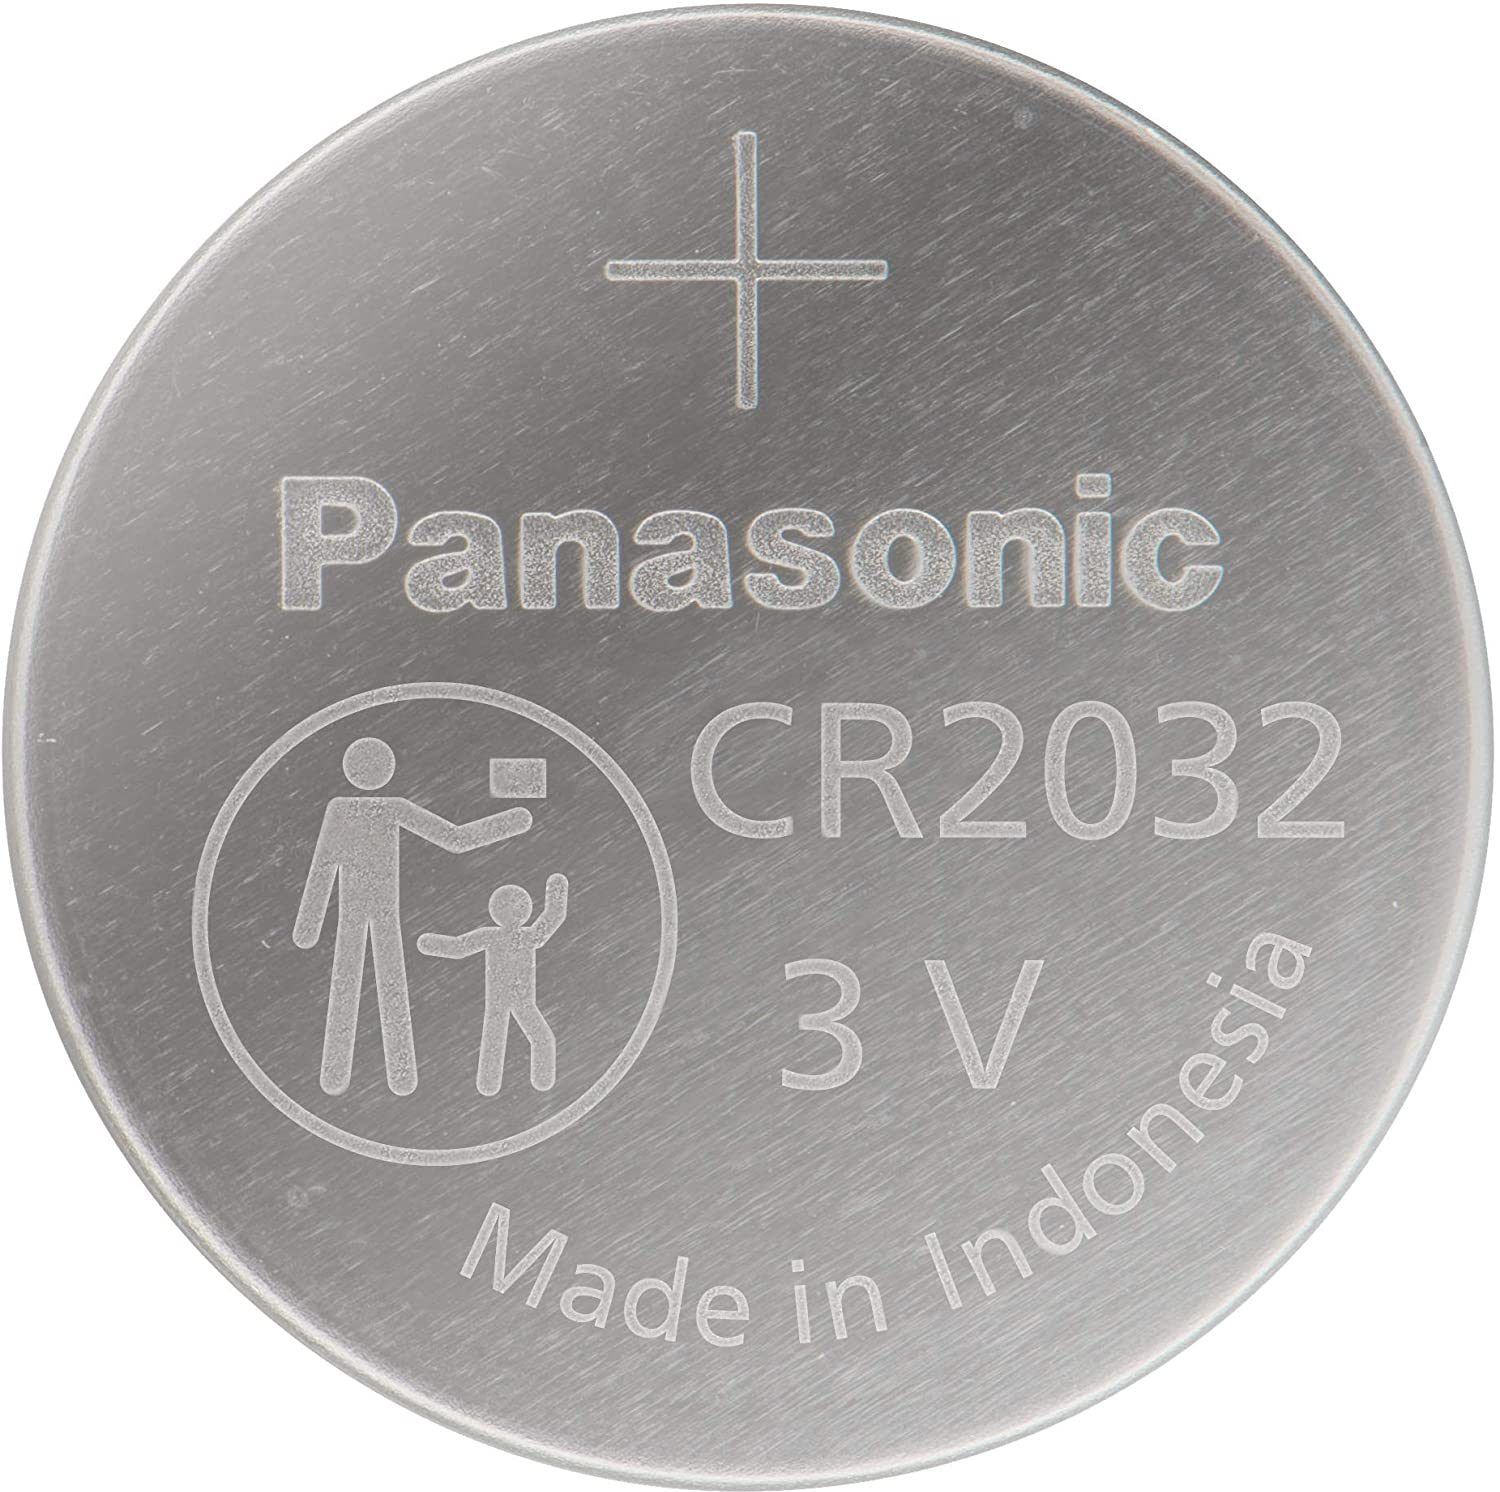 Panasonic Lithium Coin Batteries B082BVF7W6 CR2032 -3